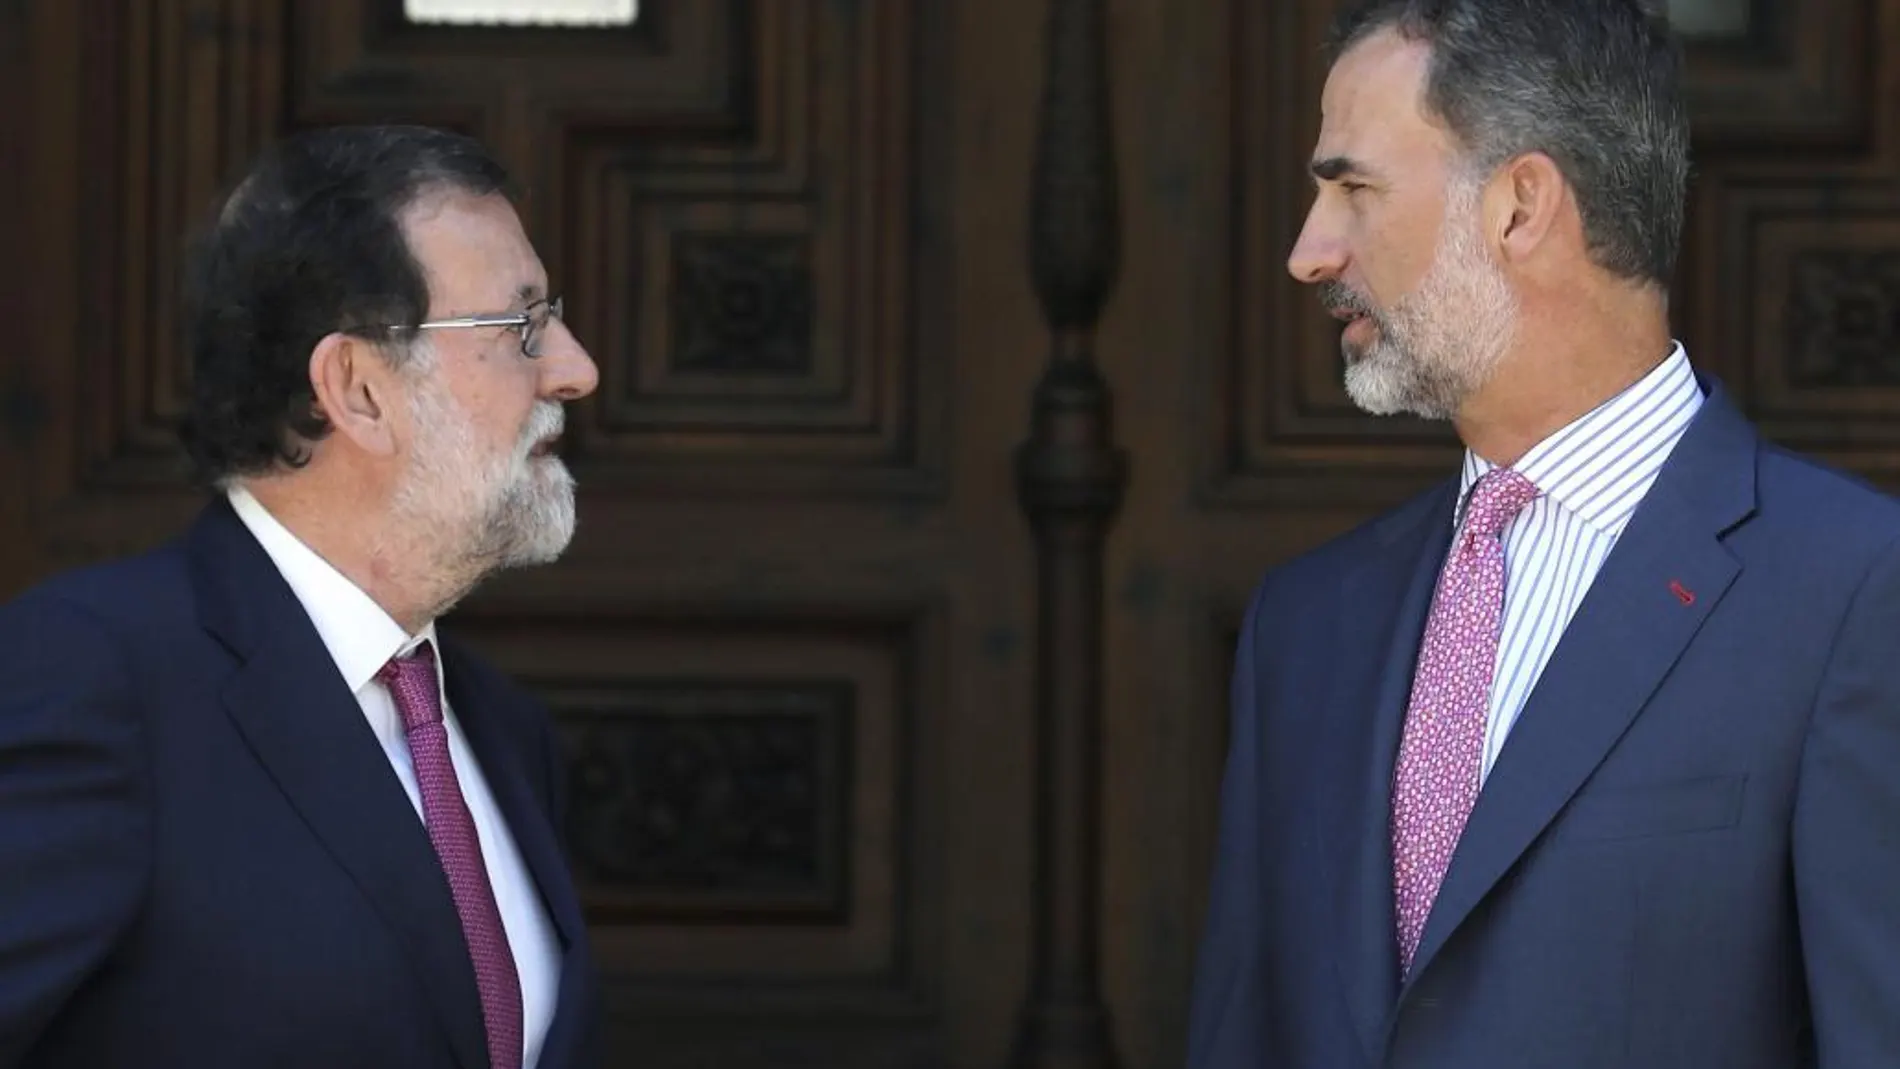 El Rey Felipe VI y el presidente del Gobierno, Mariano Rajoy, en la entrada del Palacio de Marivent, poco antes del tradicional despacho de verano